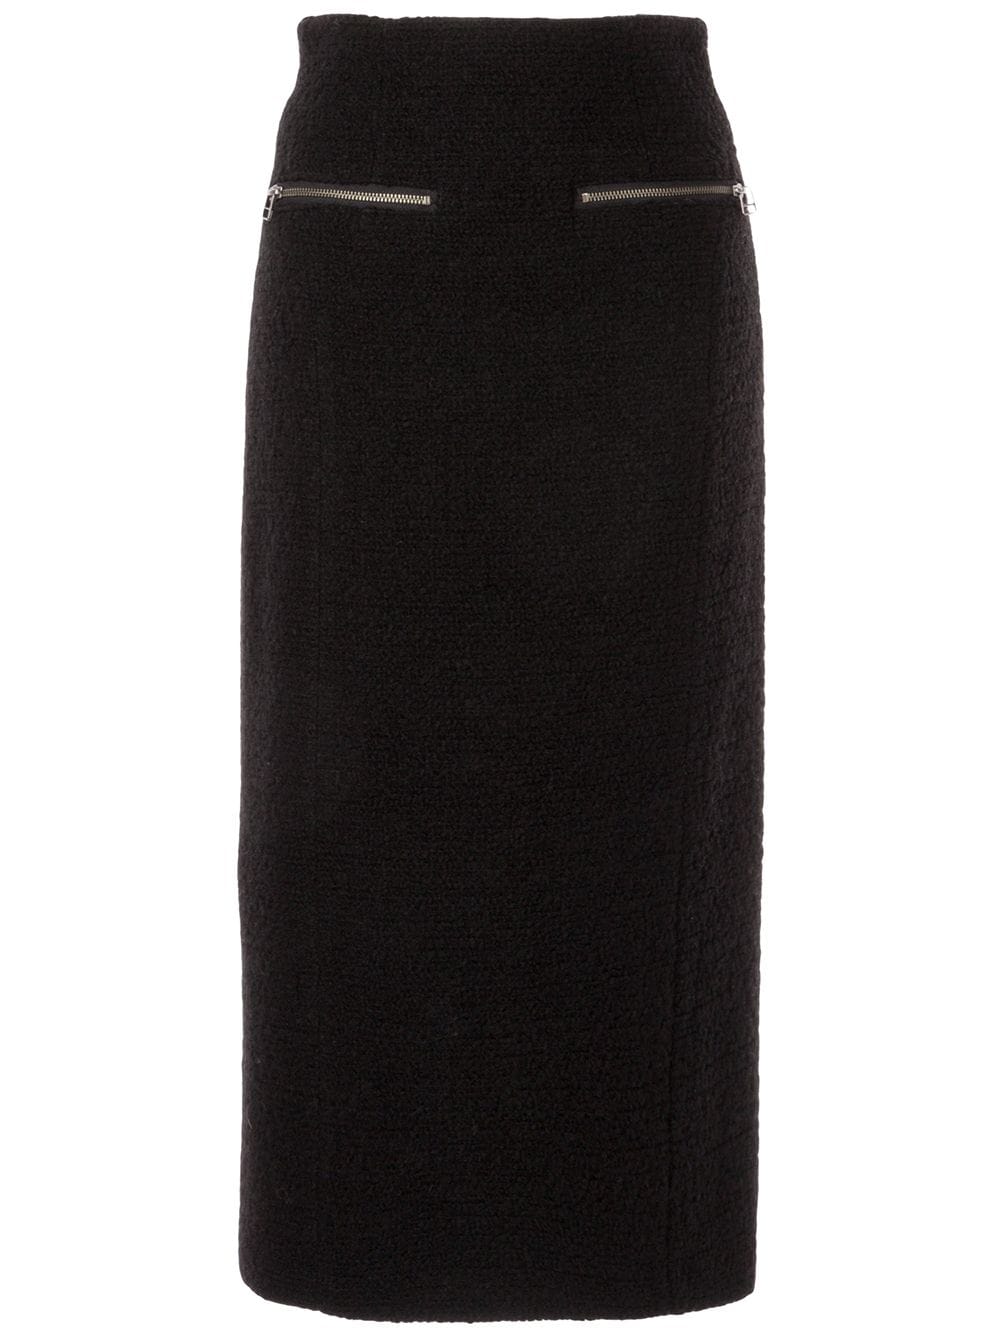 фото Muller of yoshiokubo флисовая юбка длины миди